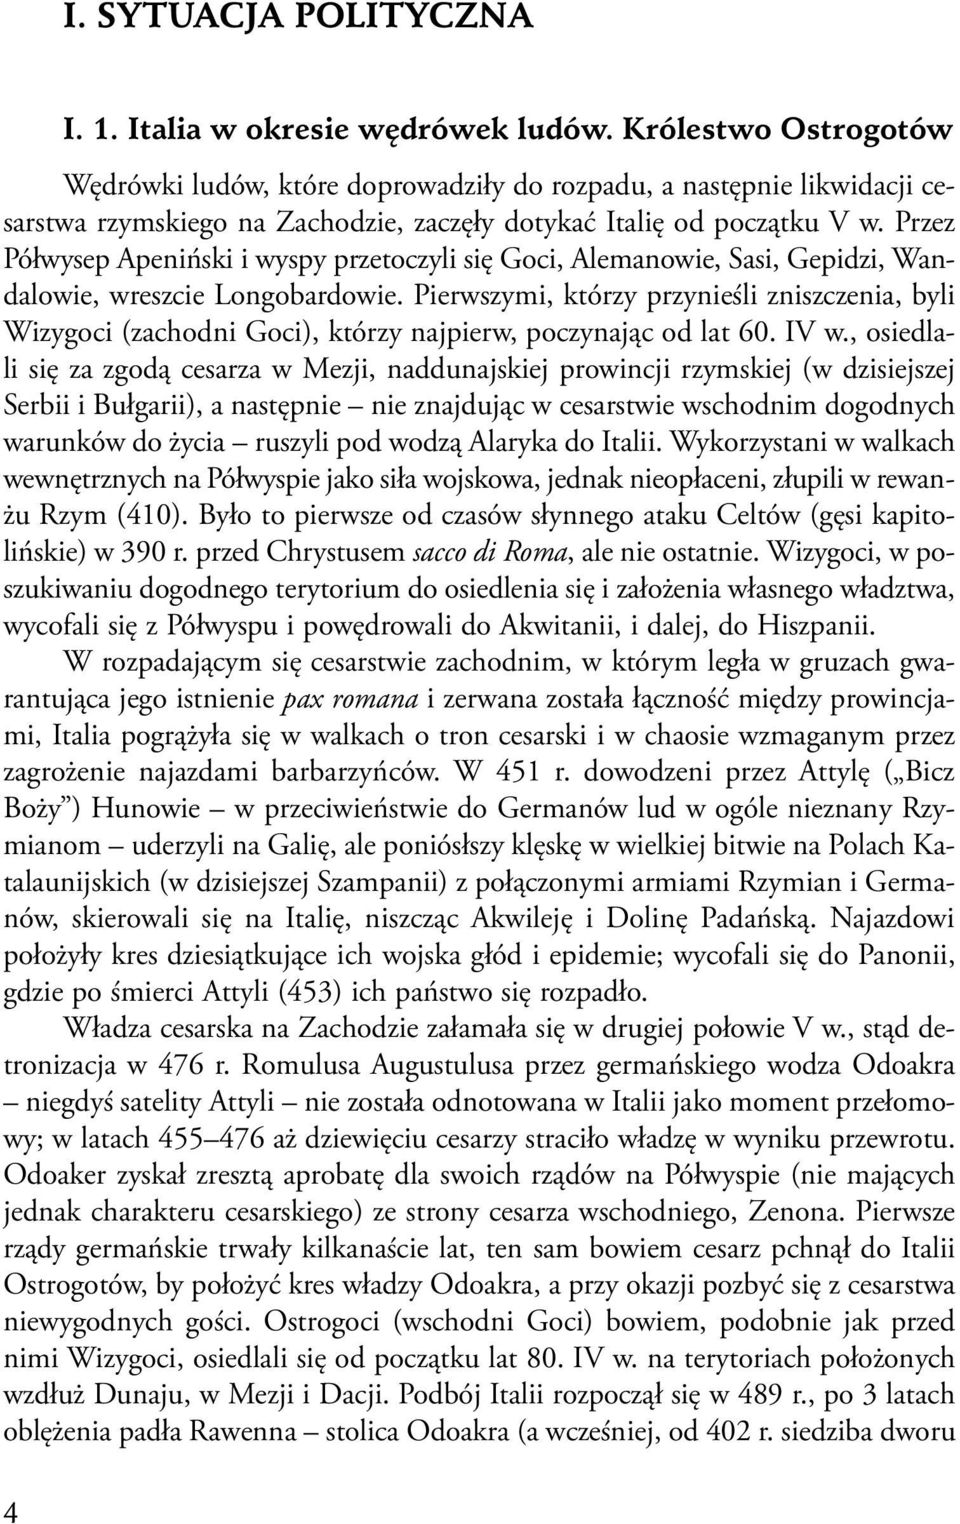 Przez Półwysep Apeniński i wyspy przetoczyli się Goci, Alemanowie, Sasi, Gepidzi, Wandalowie, wreszcie Longobardowie.